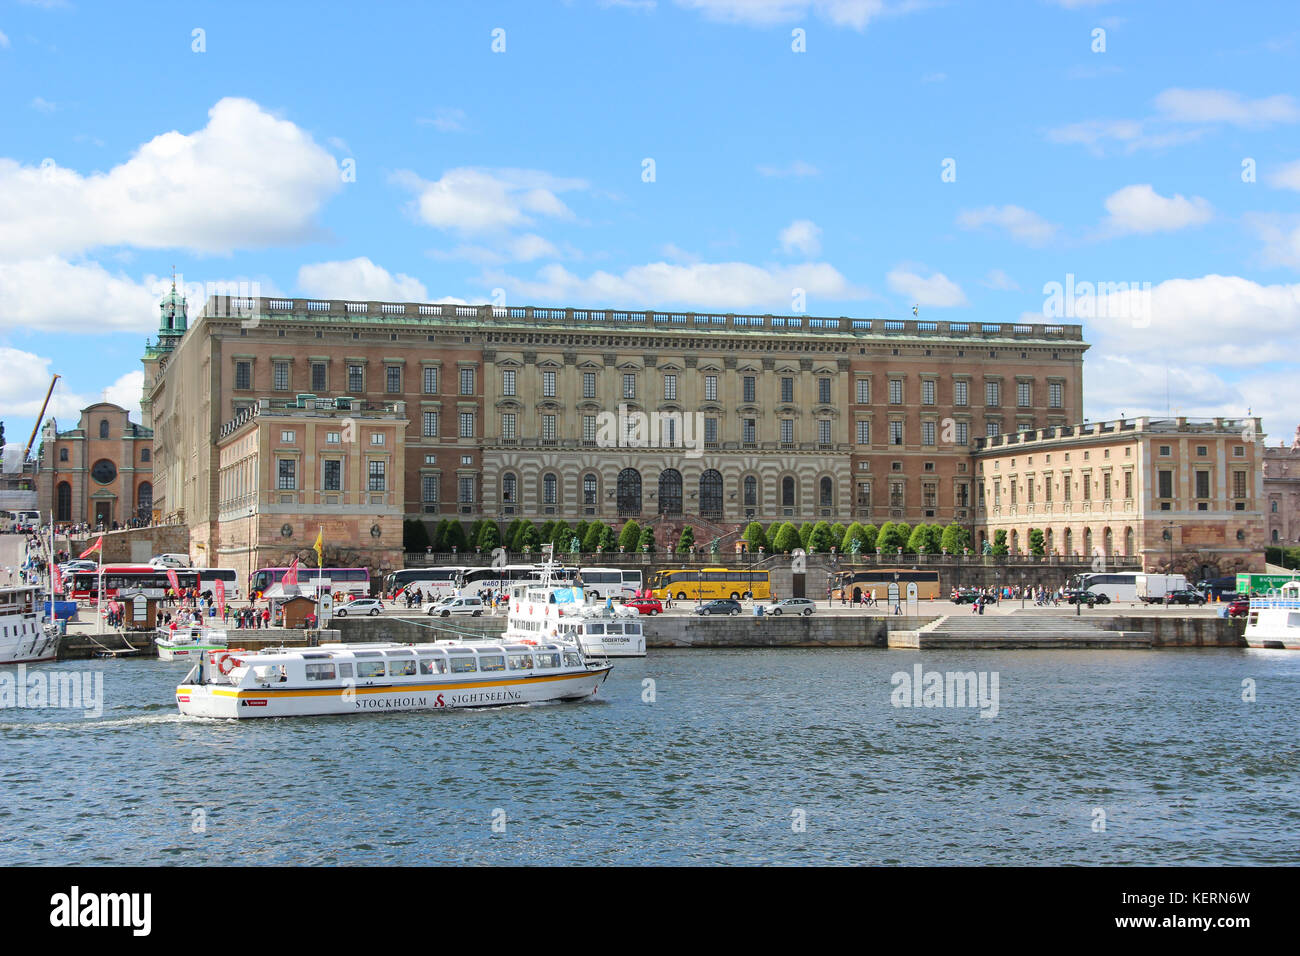 Palais Royal de Stockholm est la résidence officielle et des grands palais royal de monarque suédois. Stadsholmen dans Gamla Stan. Le Roi de bureaux sont situés ici Banque D'Images